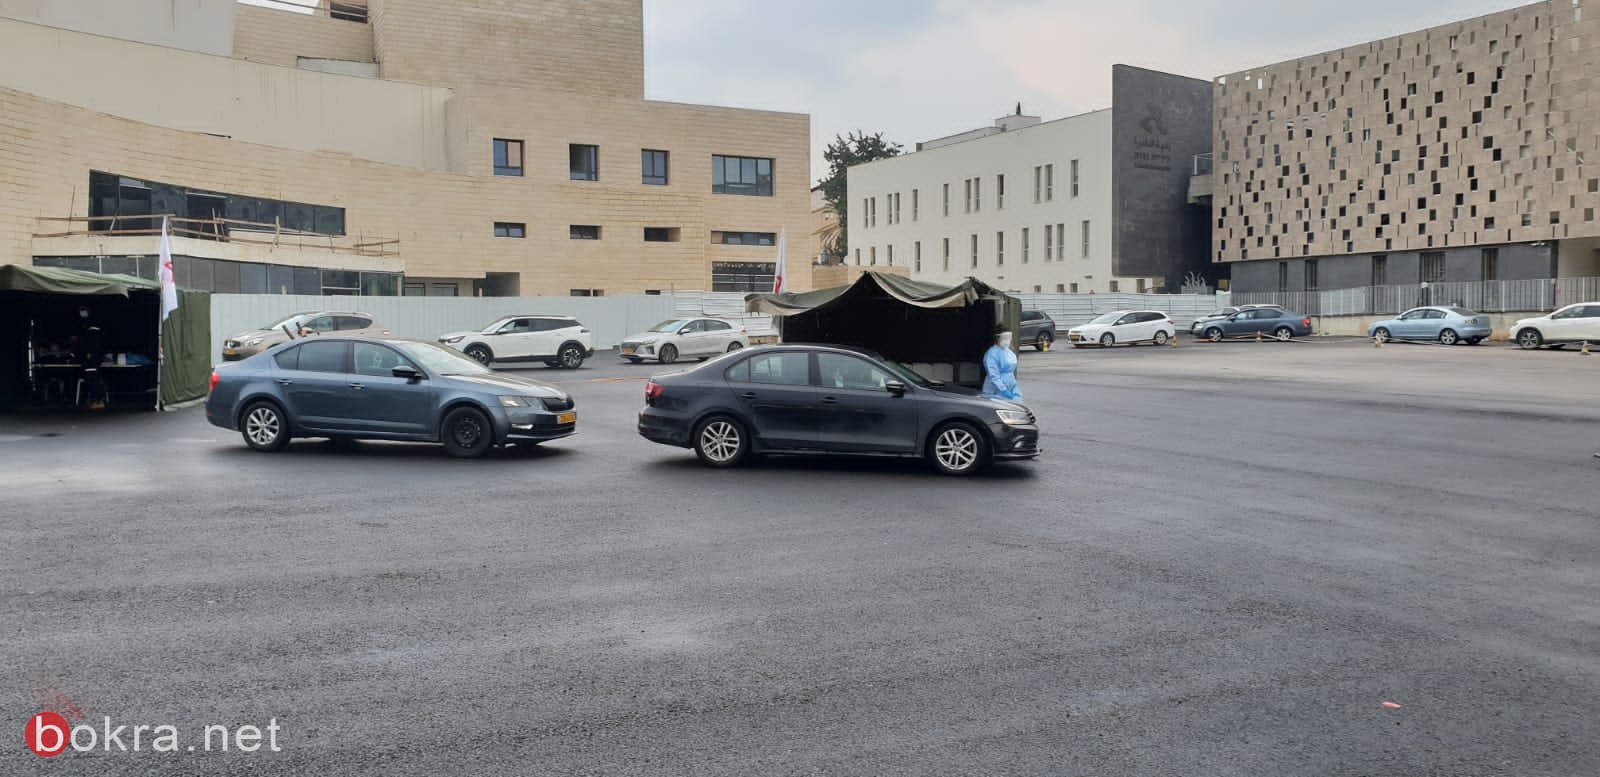 بلدية الناصرة: تعالوا لإجراء فحص الكورونا اليوم وغدًا السبت في ساحة البلدية-11